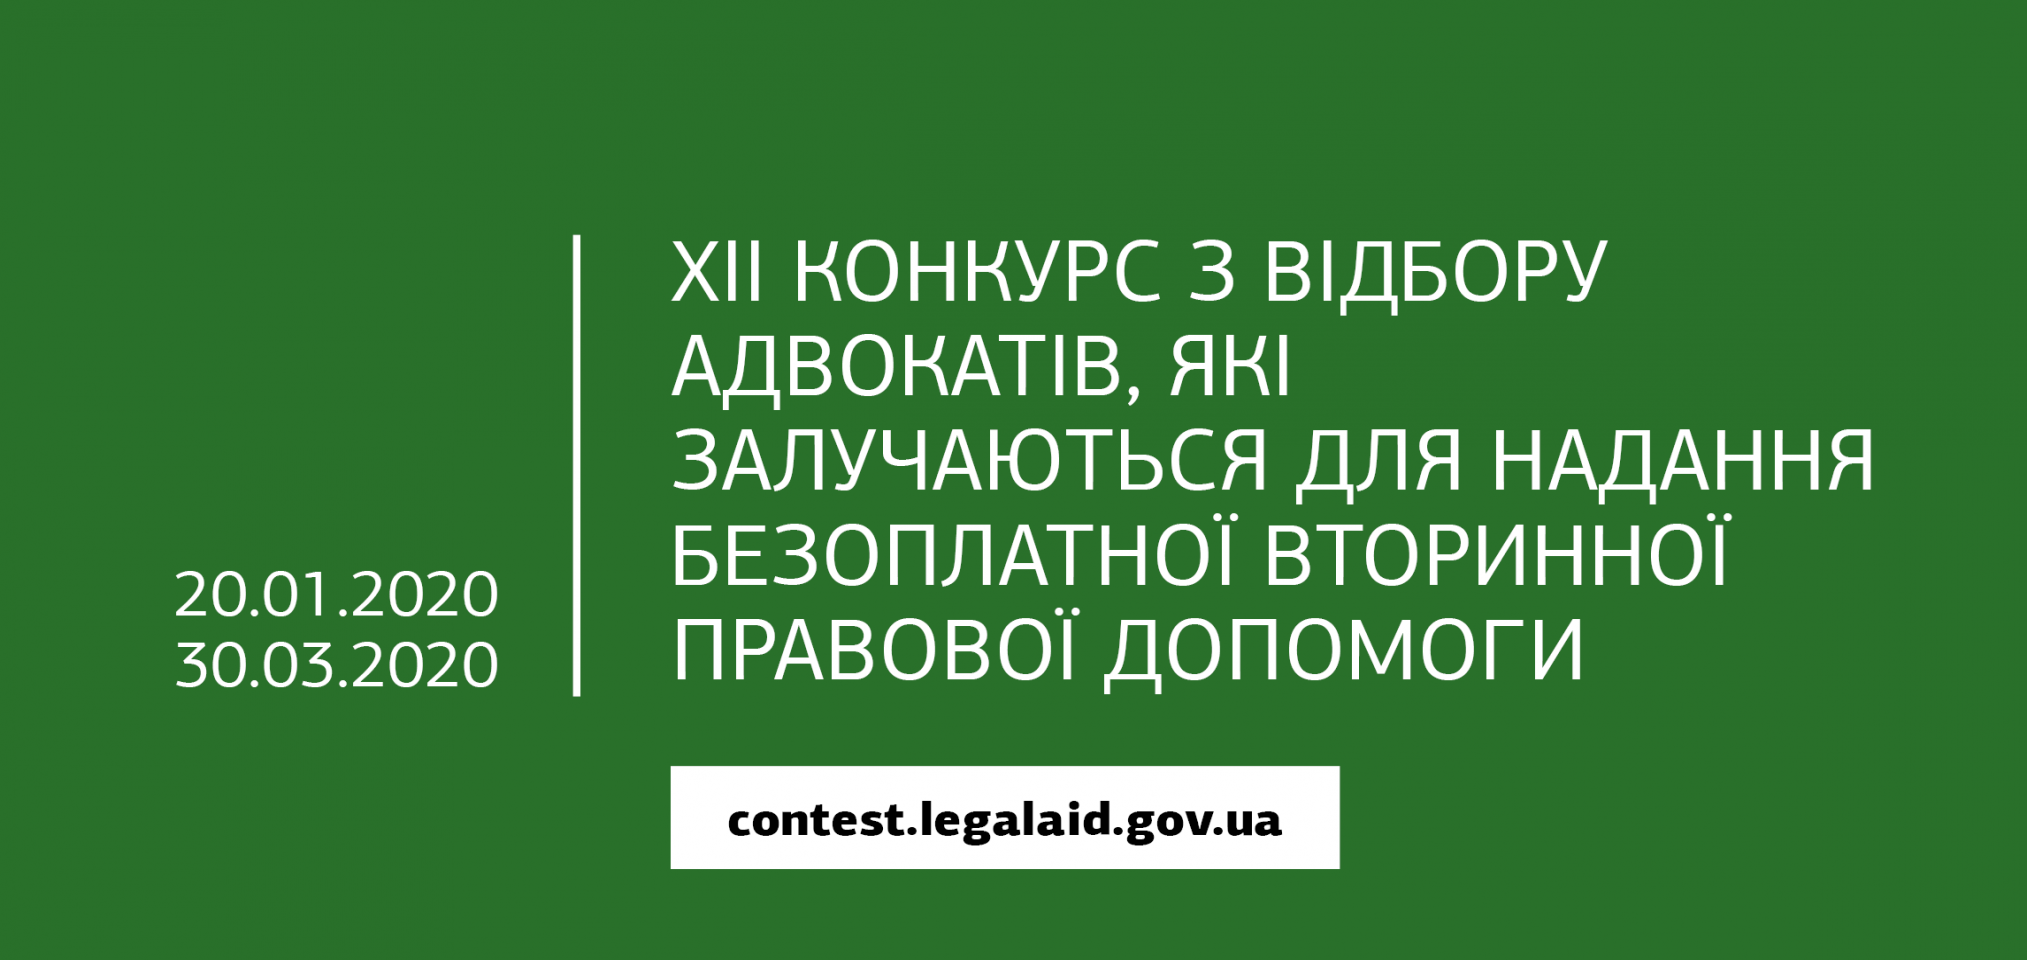 http://dunrada.gov.ua/uploadfile/archive_news/2020/01/24/2020-01-24_5814/images/images-6587.png